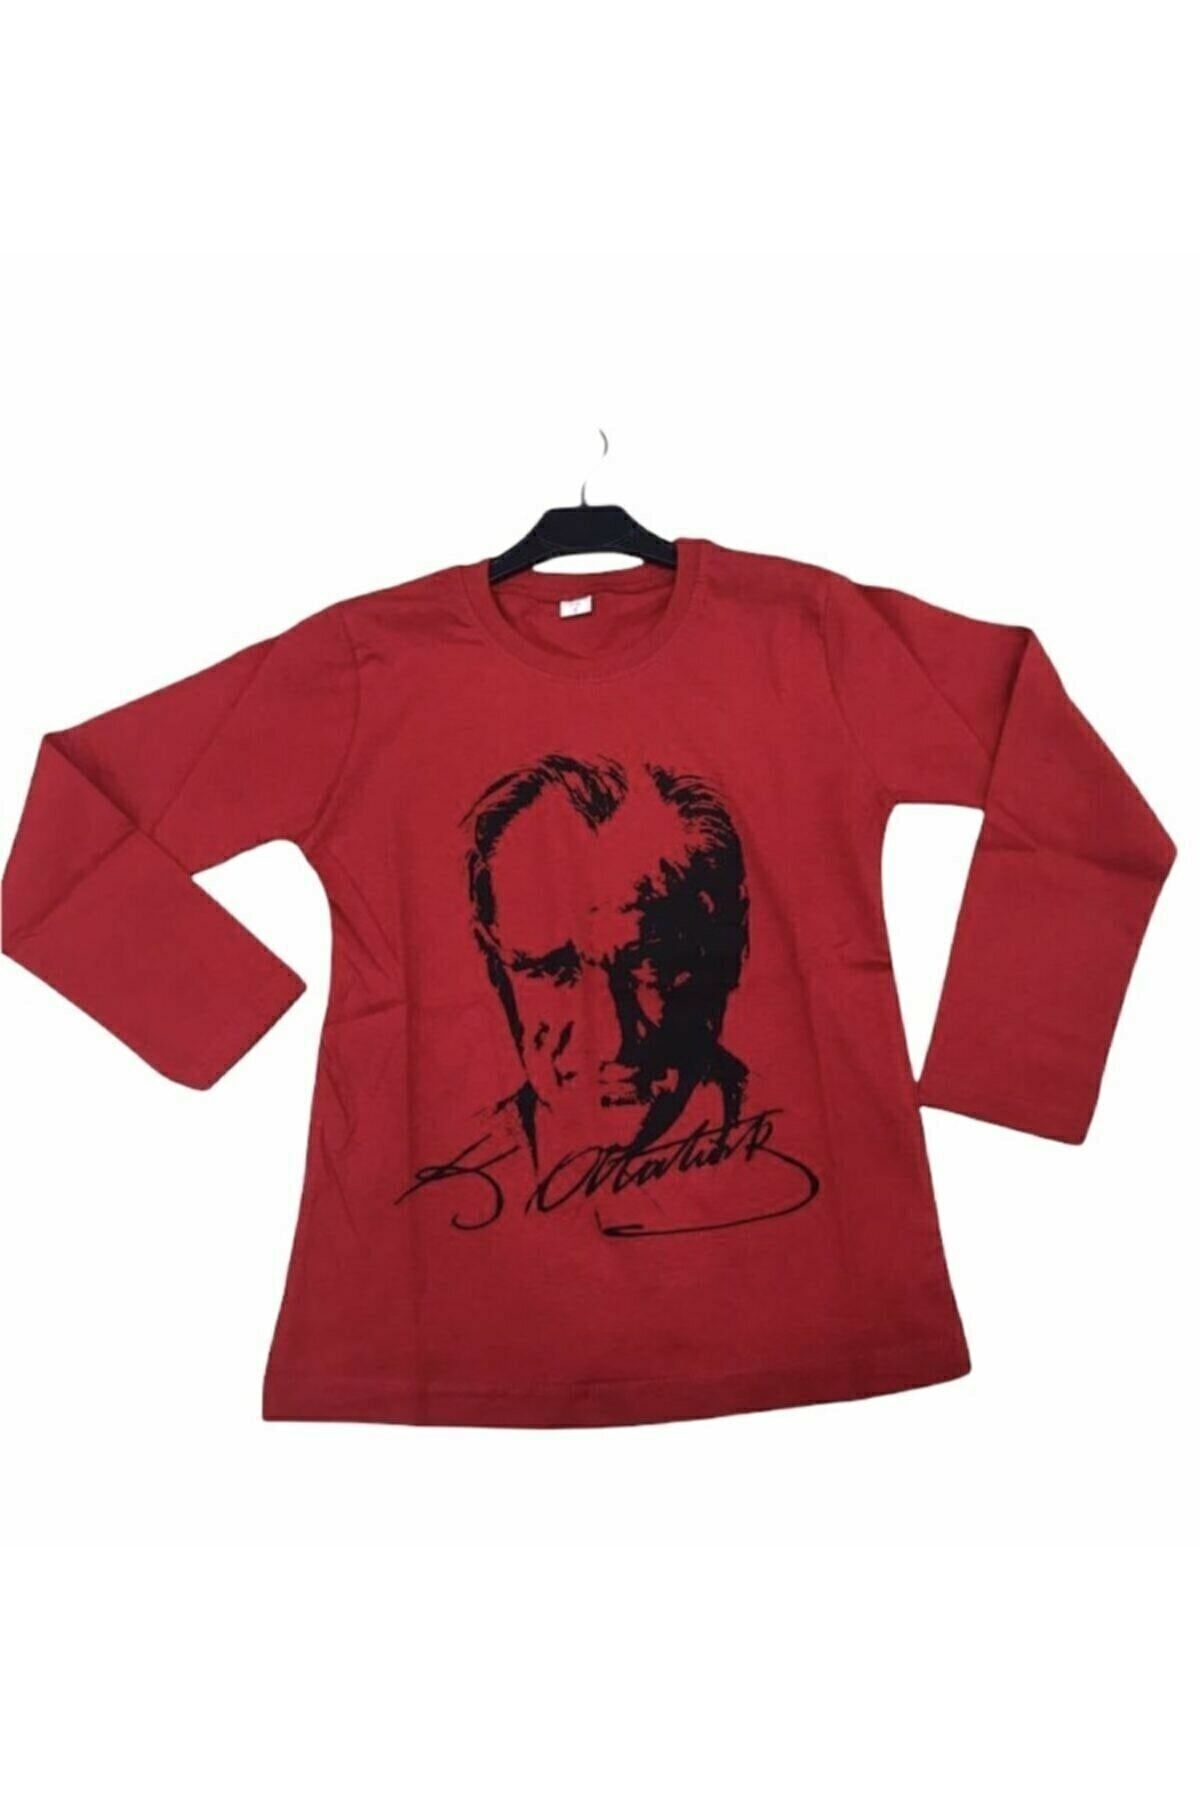 Dragora Unısex Çocuk Atatürk Baskılı Likralı Süper Compac Penye Kırmızı Badi T-shirt